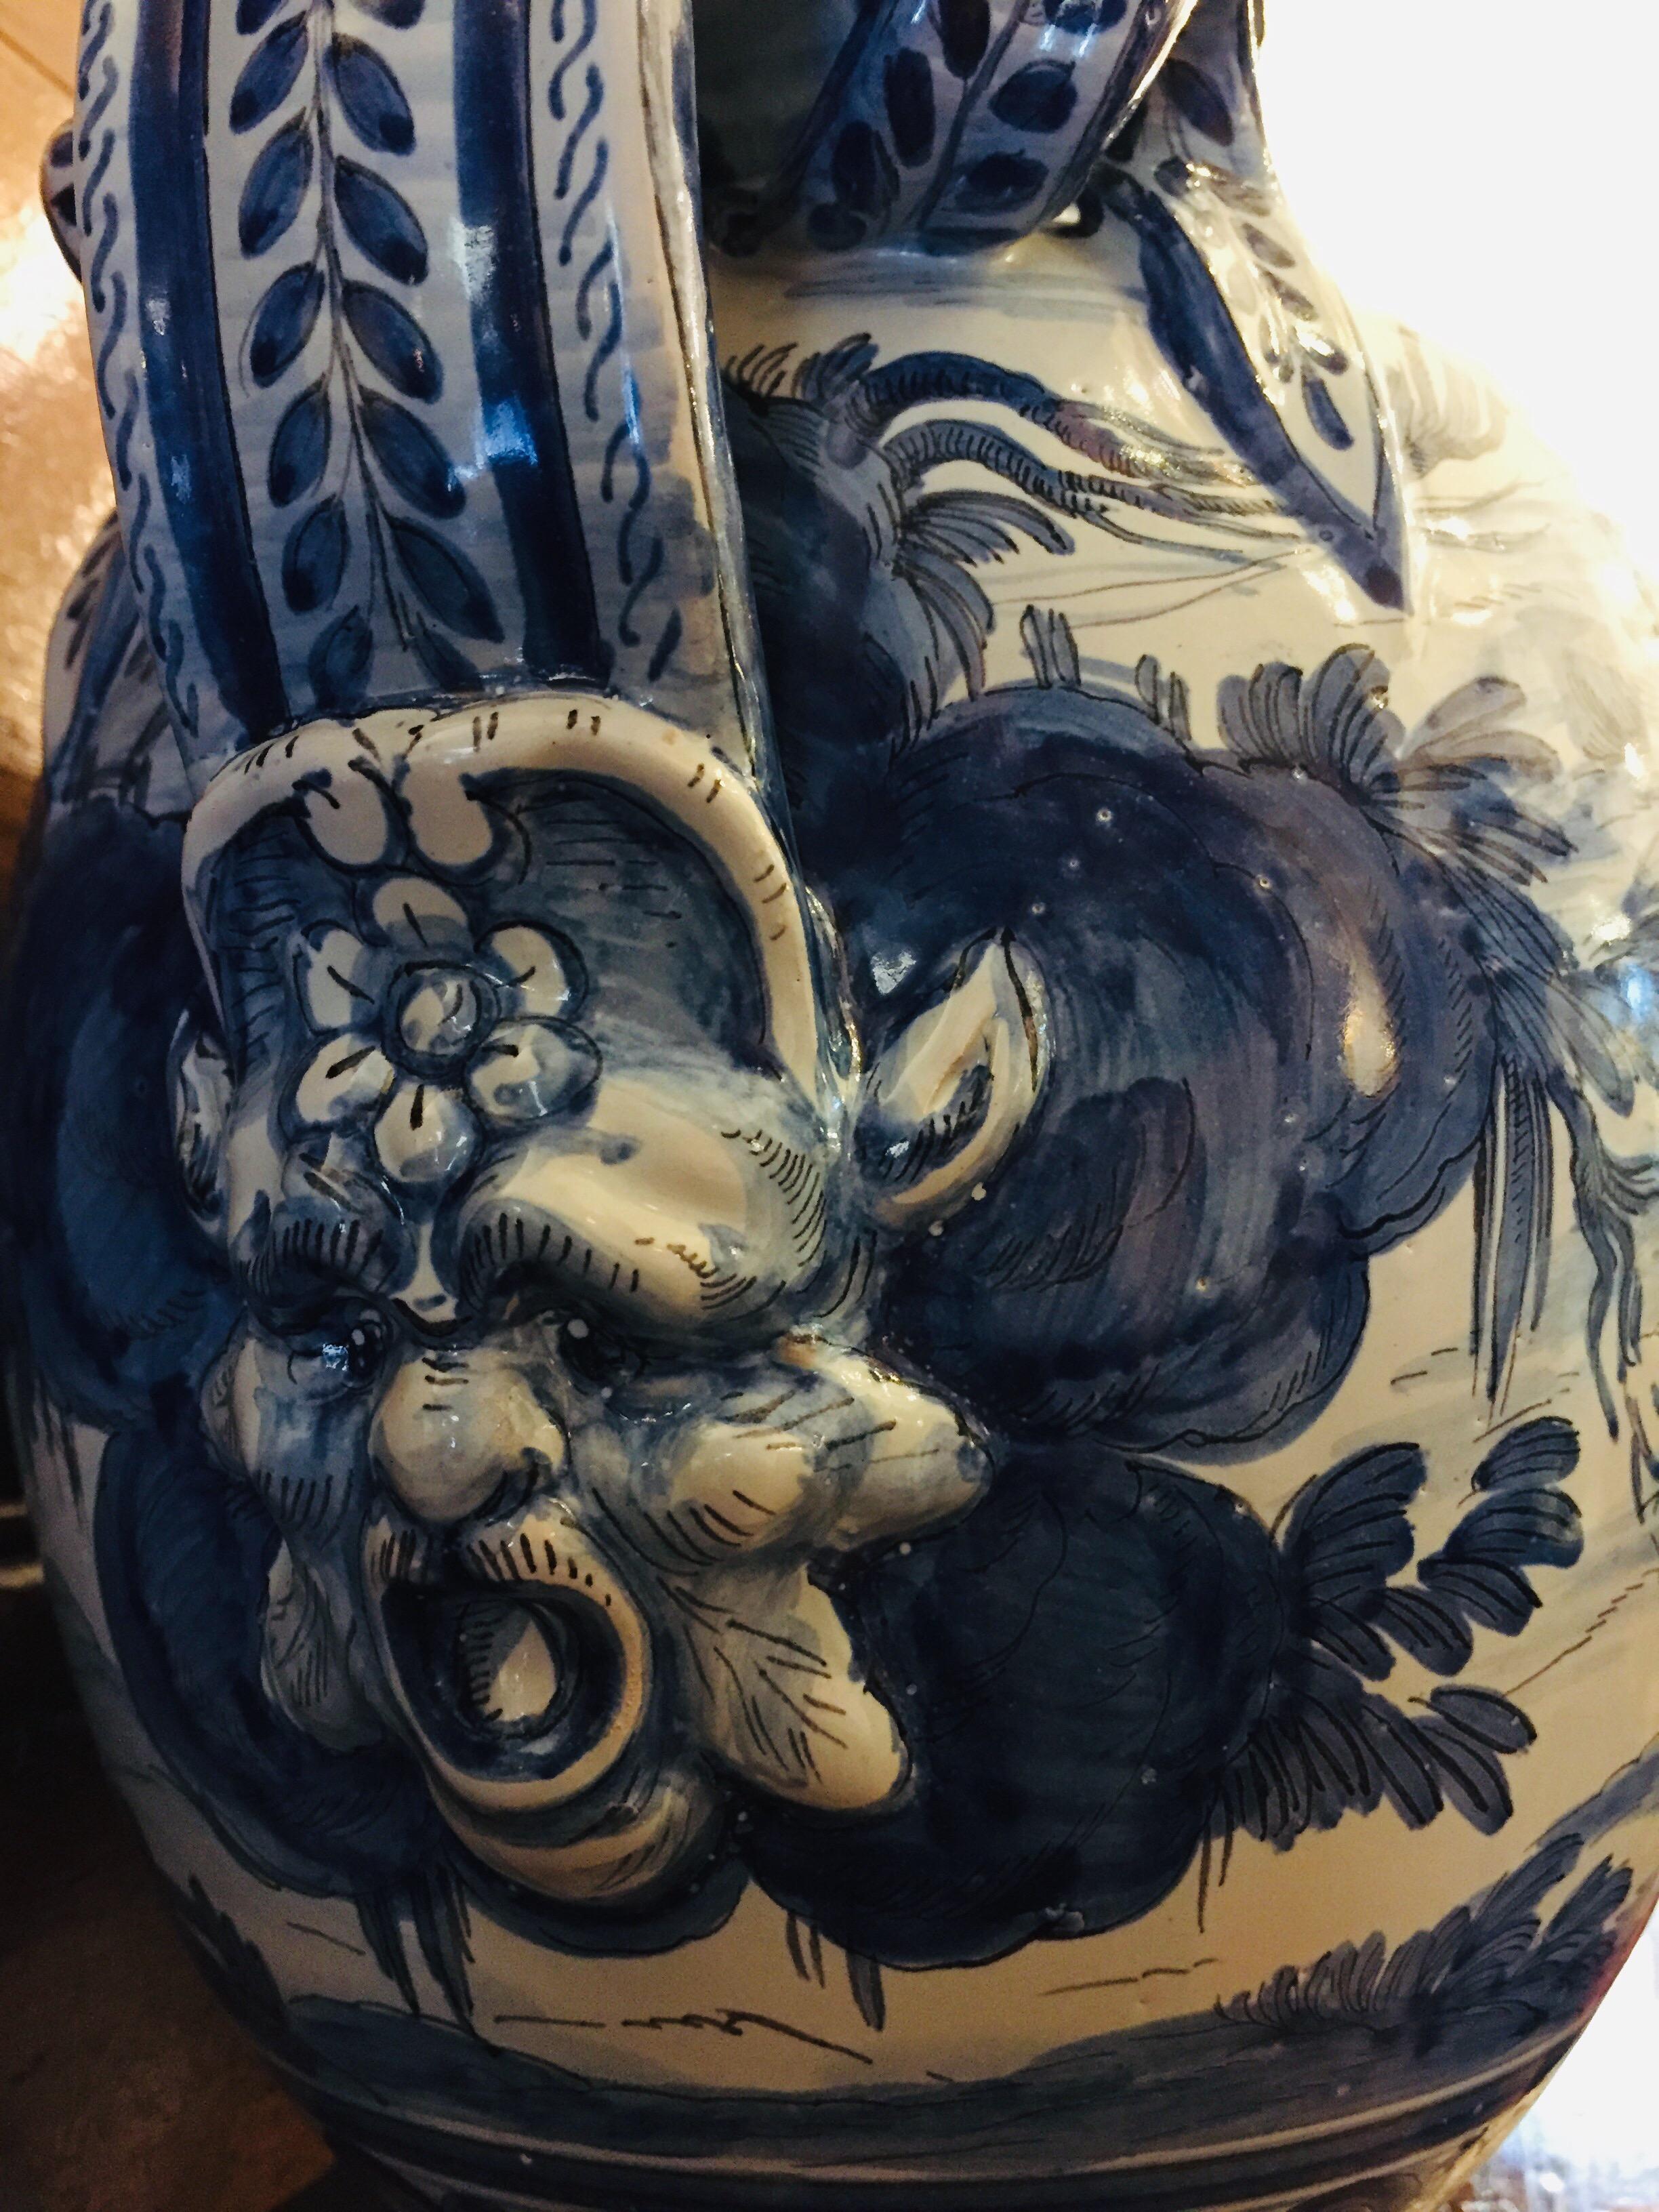 Pair of Italian Vases 20th Century Blue and White Maiolica Savona Vases 11